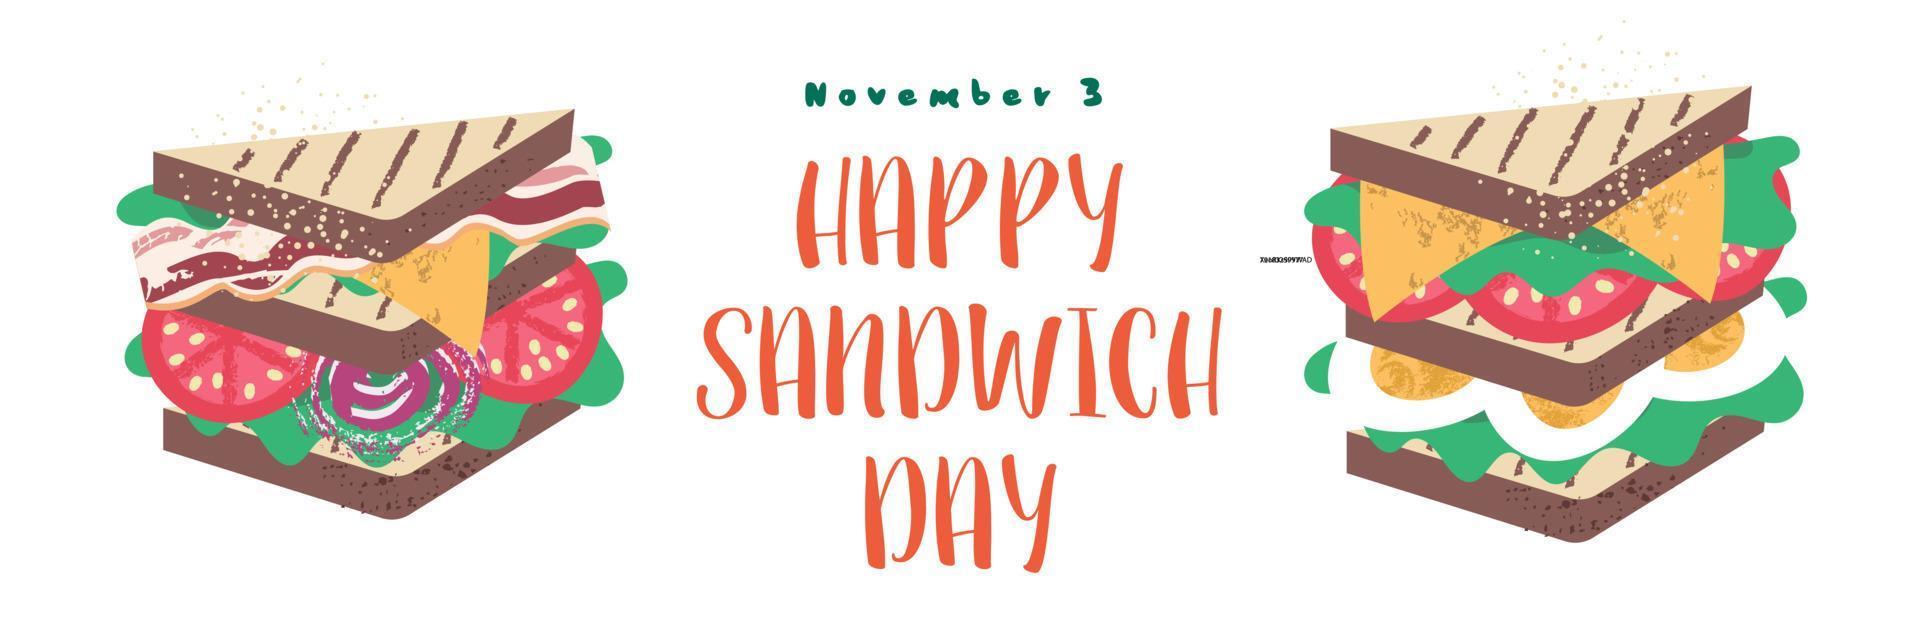 sandwich. bonne journée sandwich. illustration vectorielle en style cartoon plat. vecteur